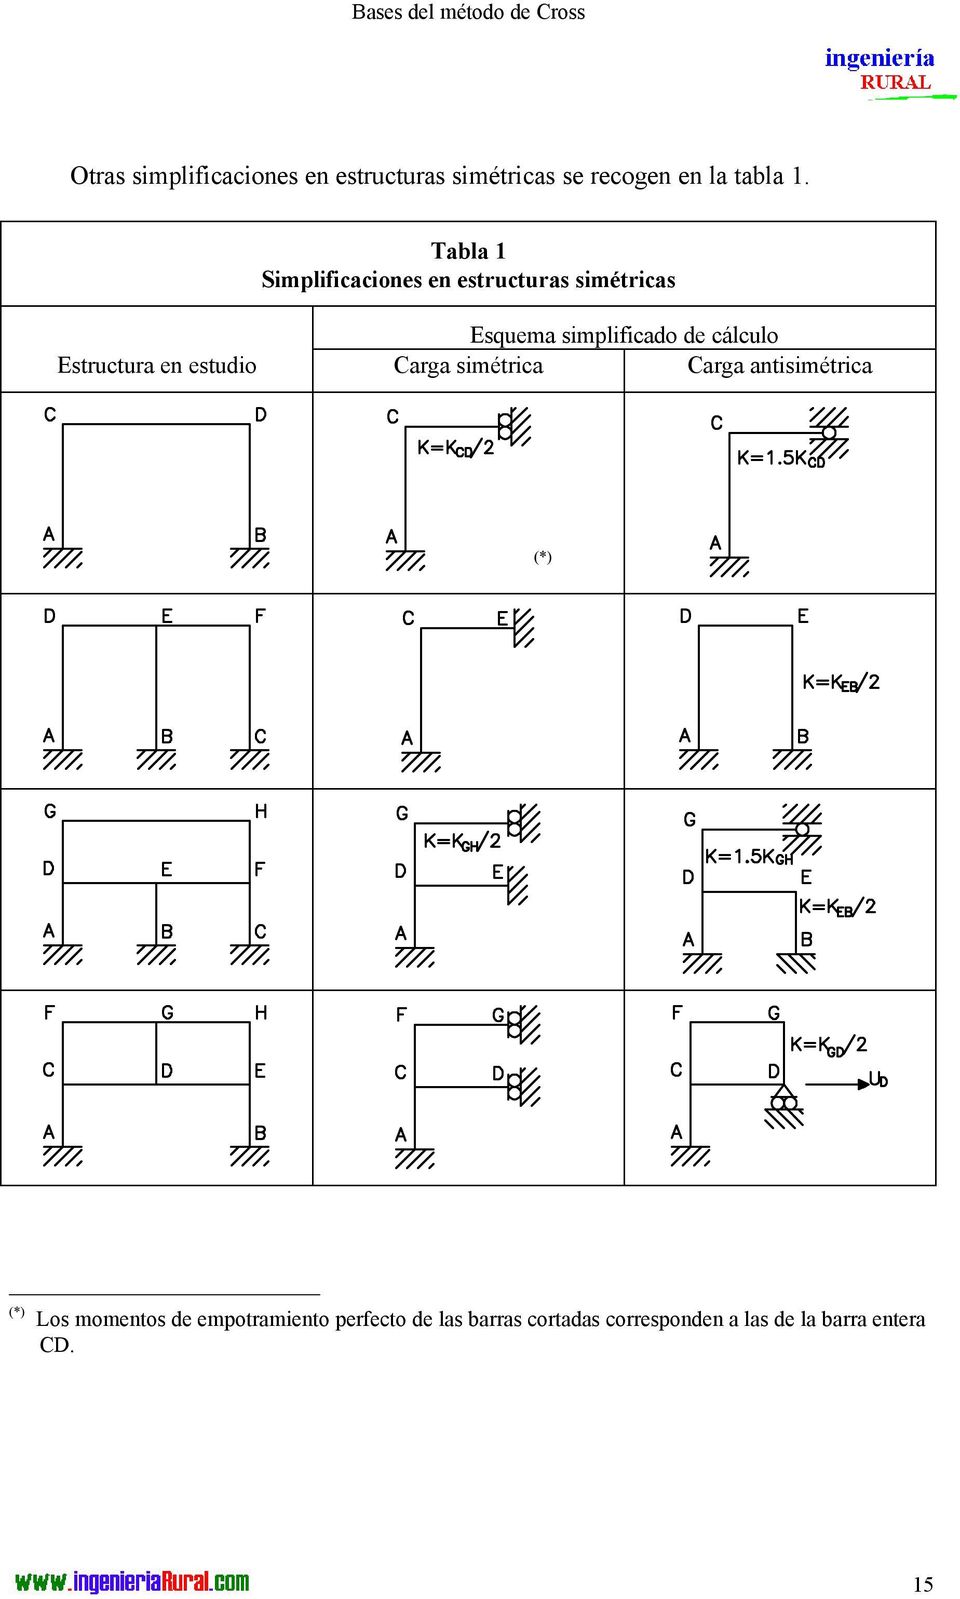 Tabla Simplificaciones en estructuras simétricas squema simplificado de cálculo